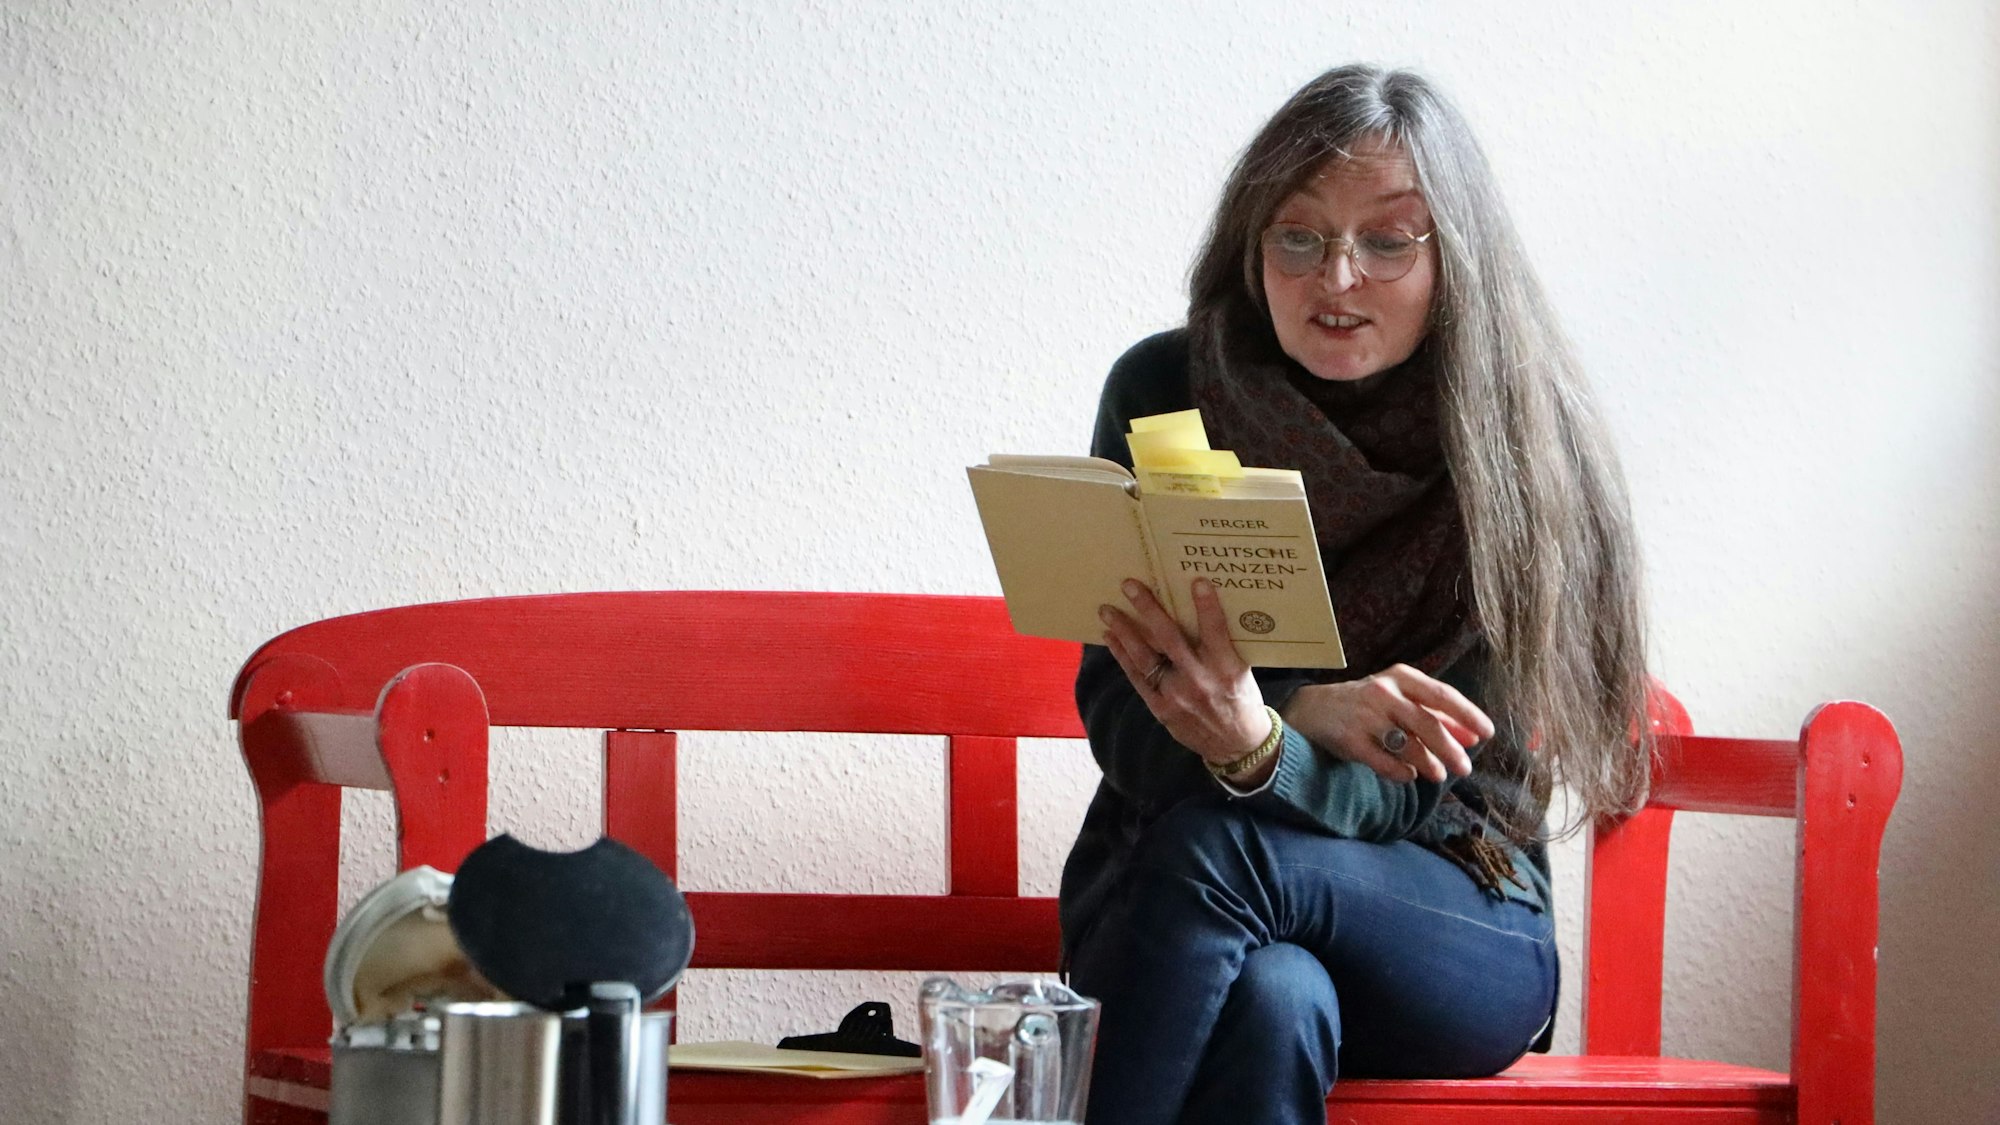 Christiane Remmert vom Kulturhaus Theater 1 sitzt auf einer roten Bank und liest aus einem Buch vor.